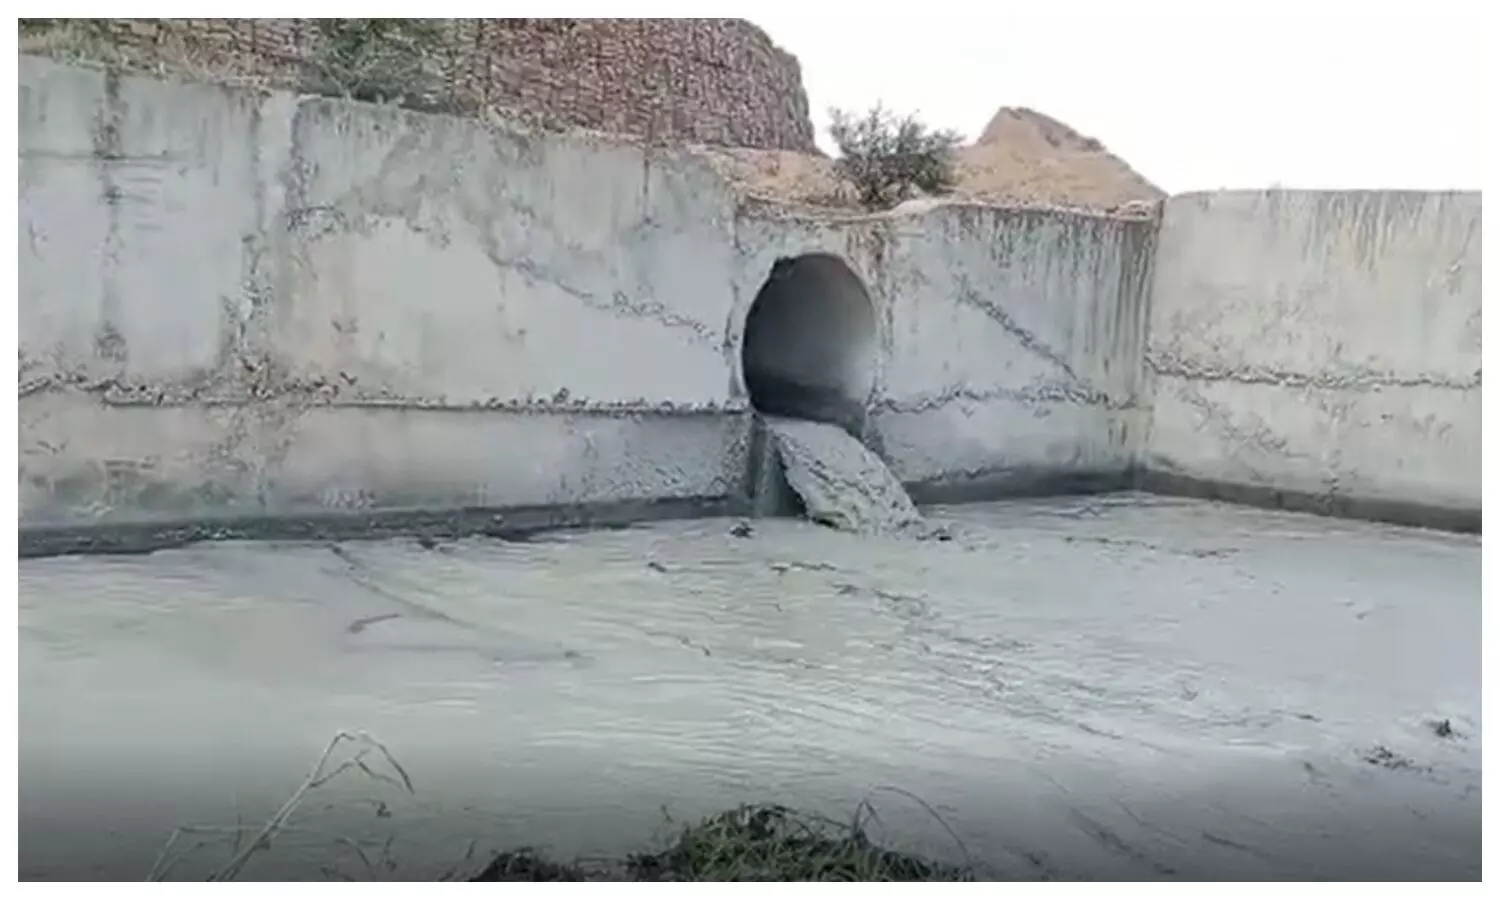 Coal ash in river in Sonbhadra